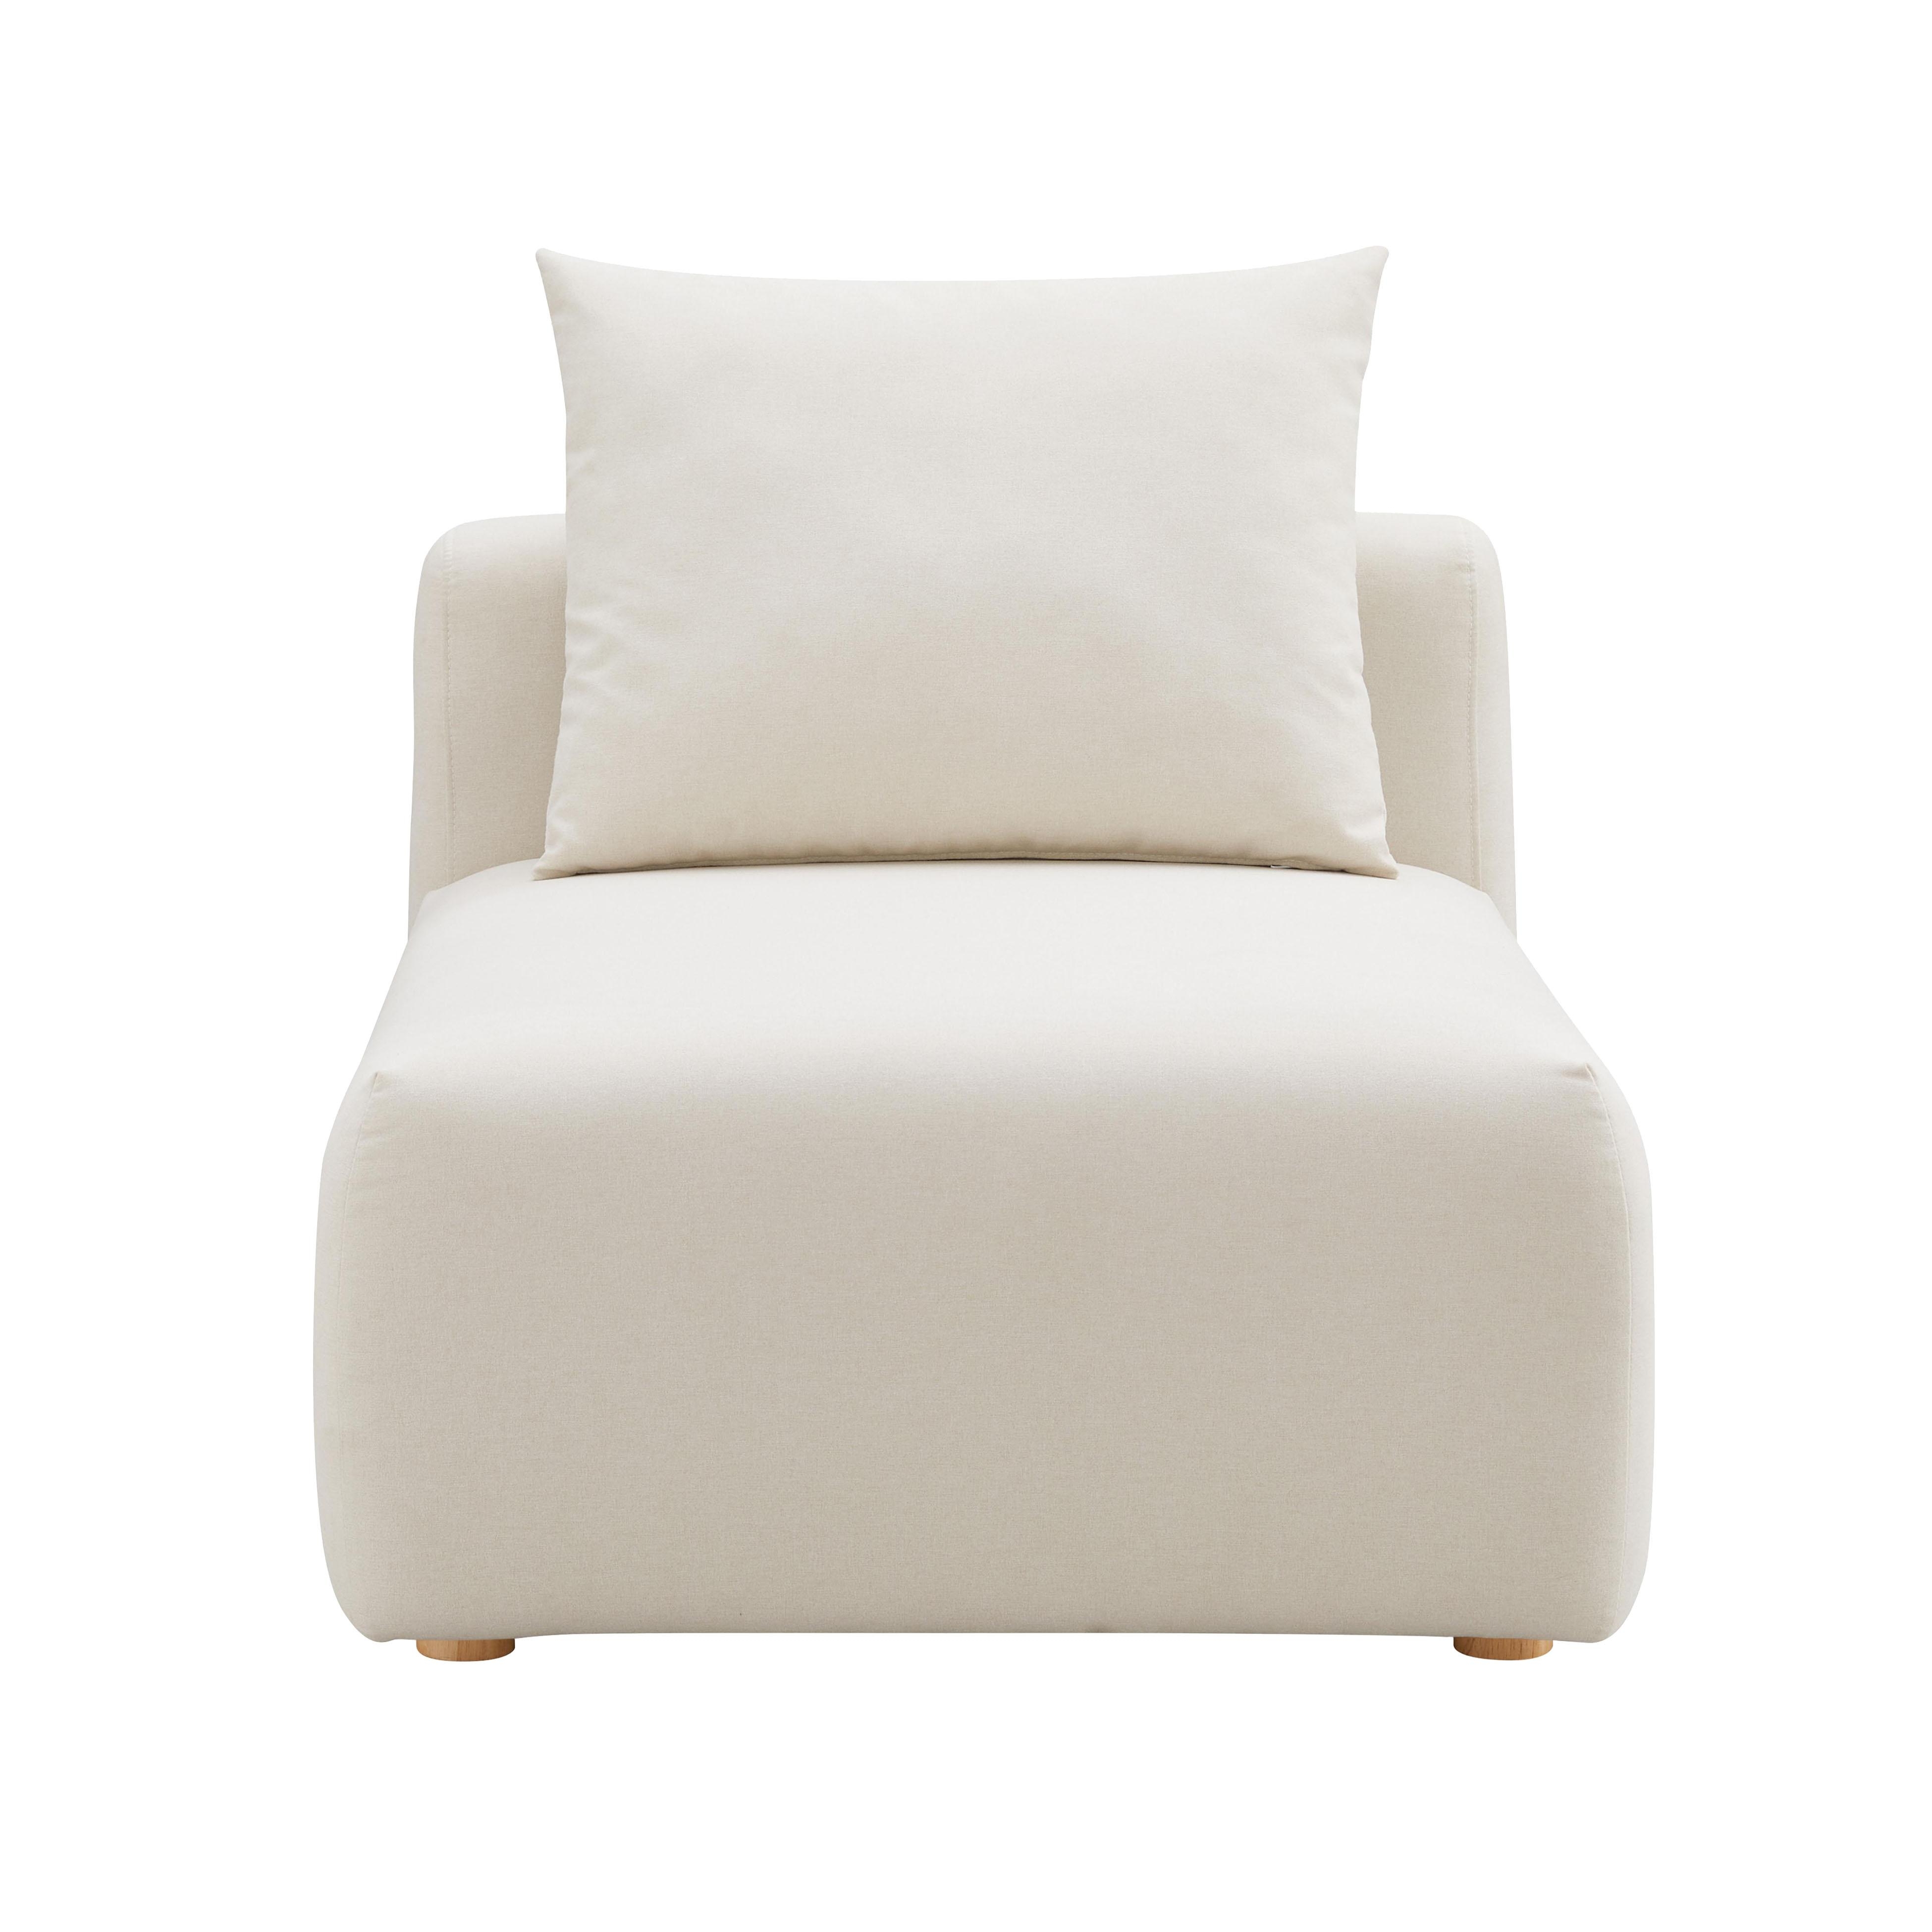 Hangover Cream Linen Modular Armless Chair - Image 1